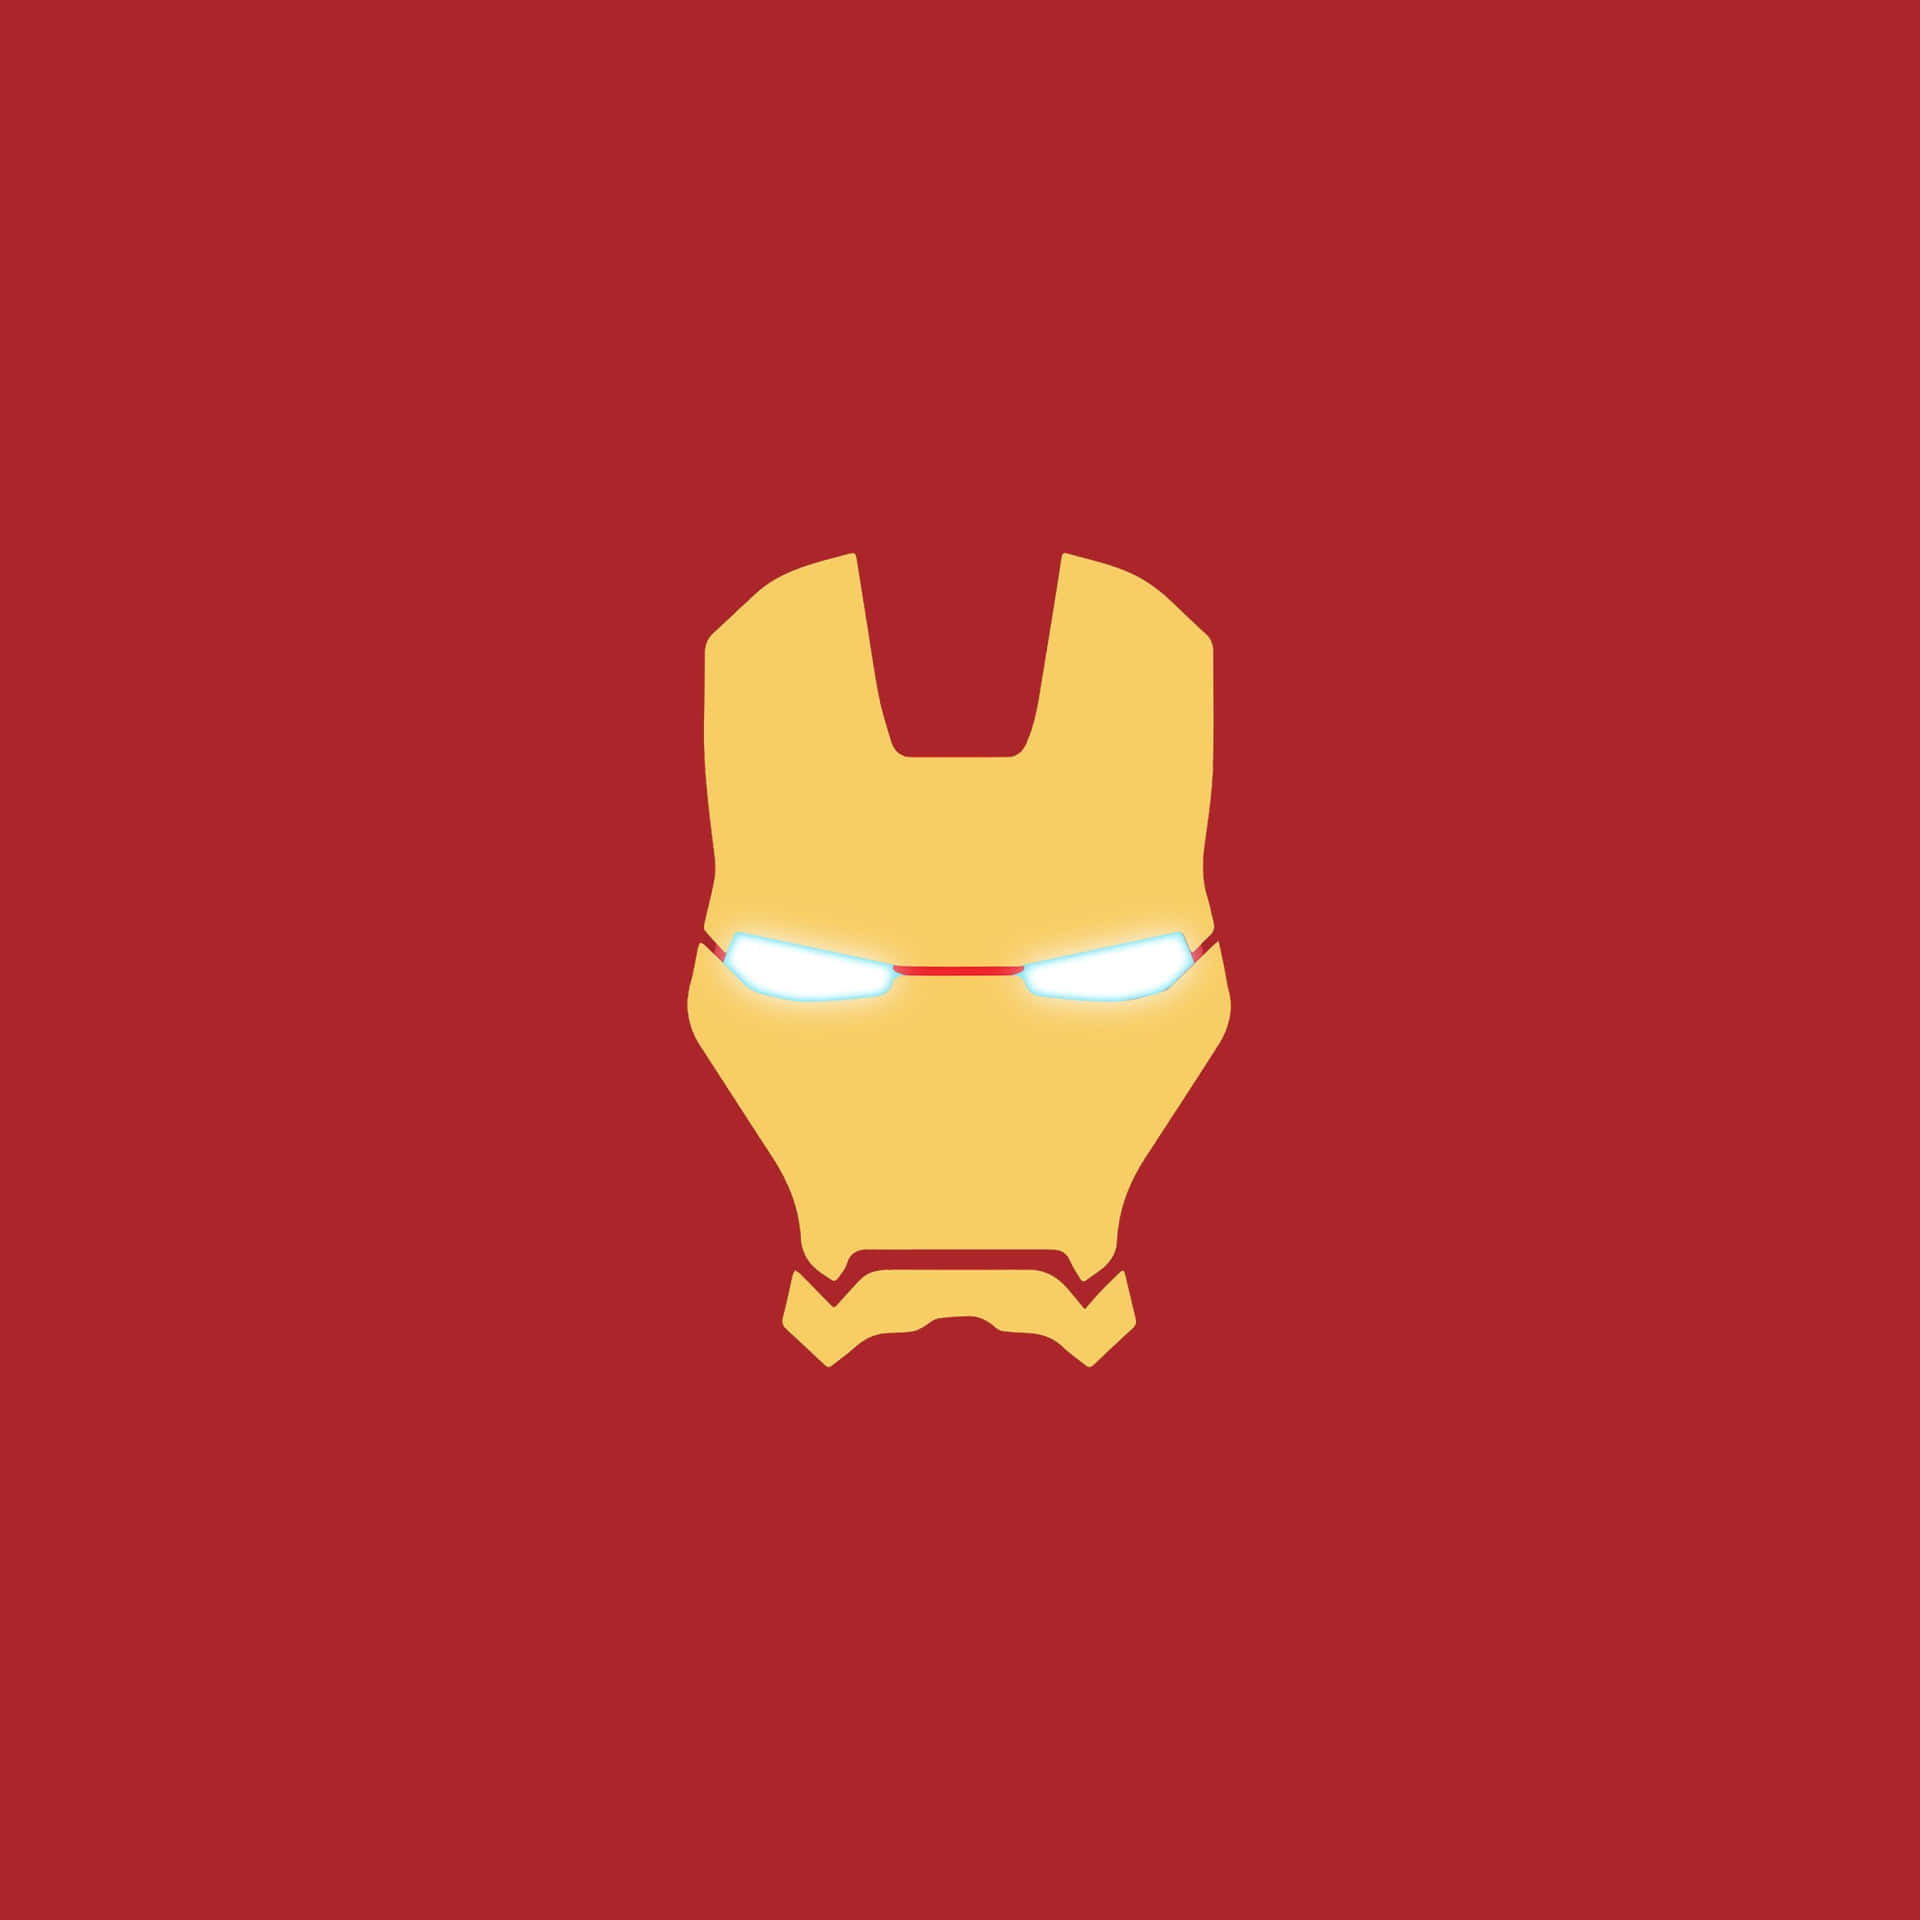 Iron Man Helmet Illustration Wallpaper